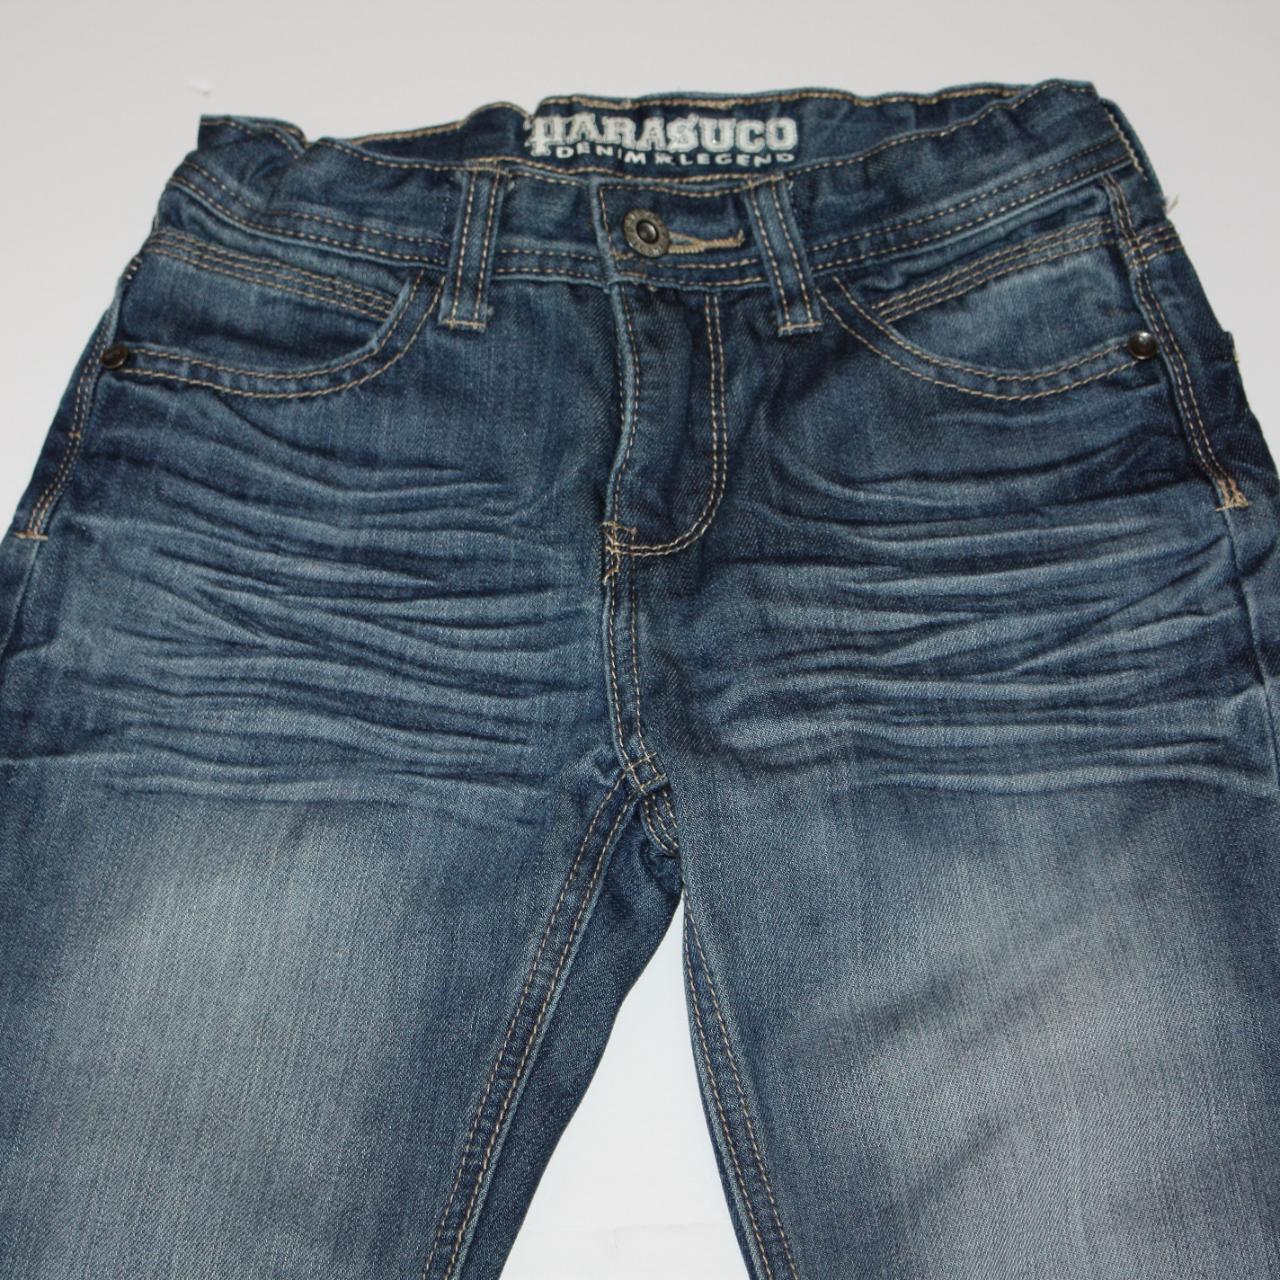 Parasuco Boy's Denim & Legend Blue Denim Jeans Pants... - Depop